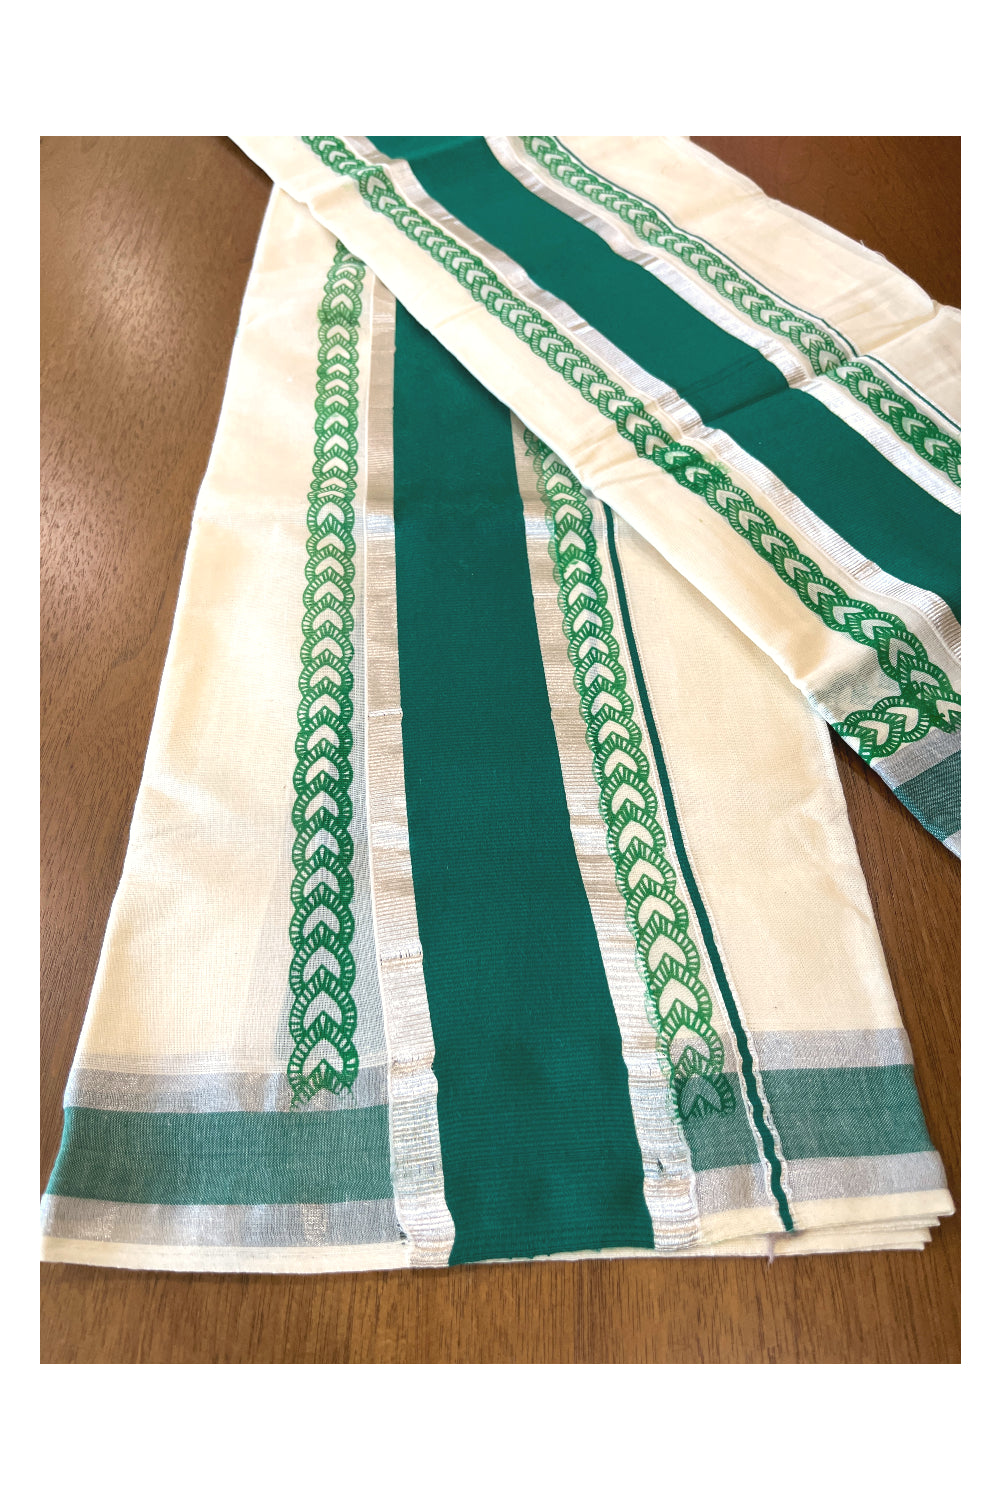 Mundum Neriyathum Single (Set Mundu) with Block Prints on Silver Kasavu and Green Border 2.80 Mtrs